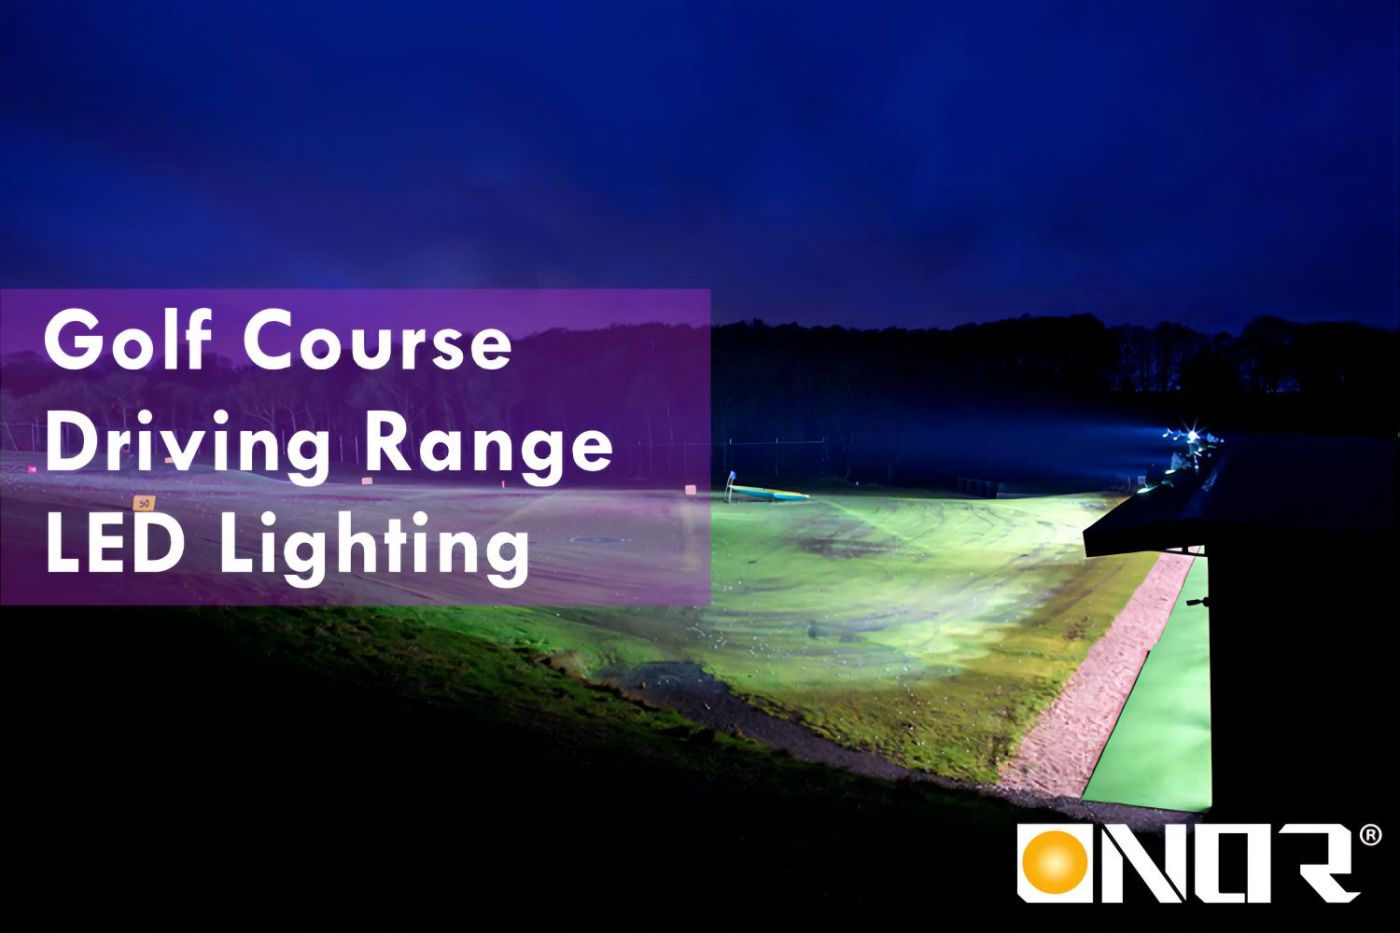 LED Golf Cuse မီးအလင်းရောင် လမ်းညွှန် ၂